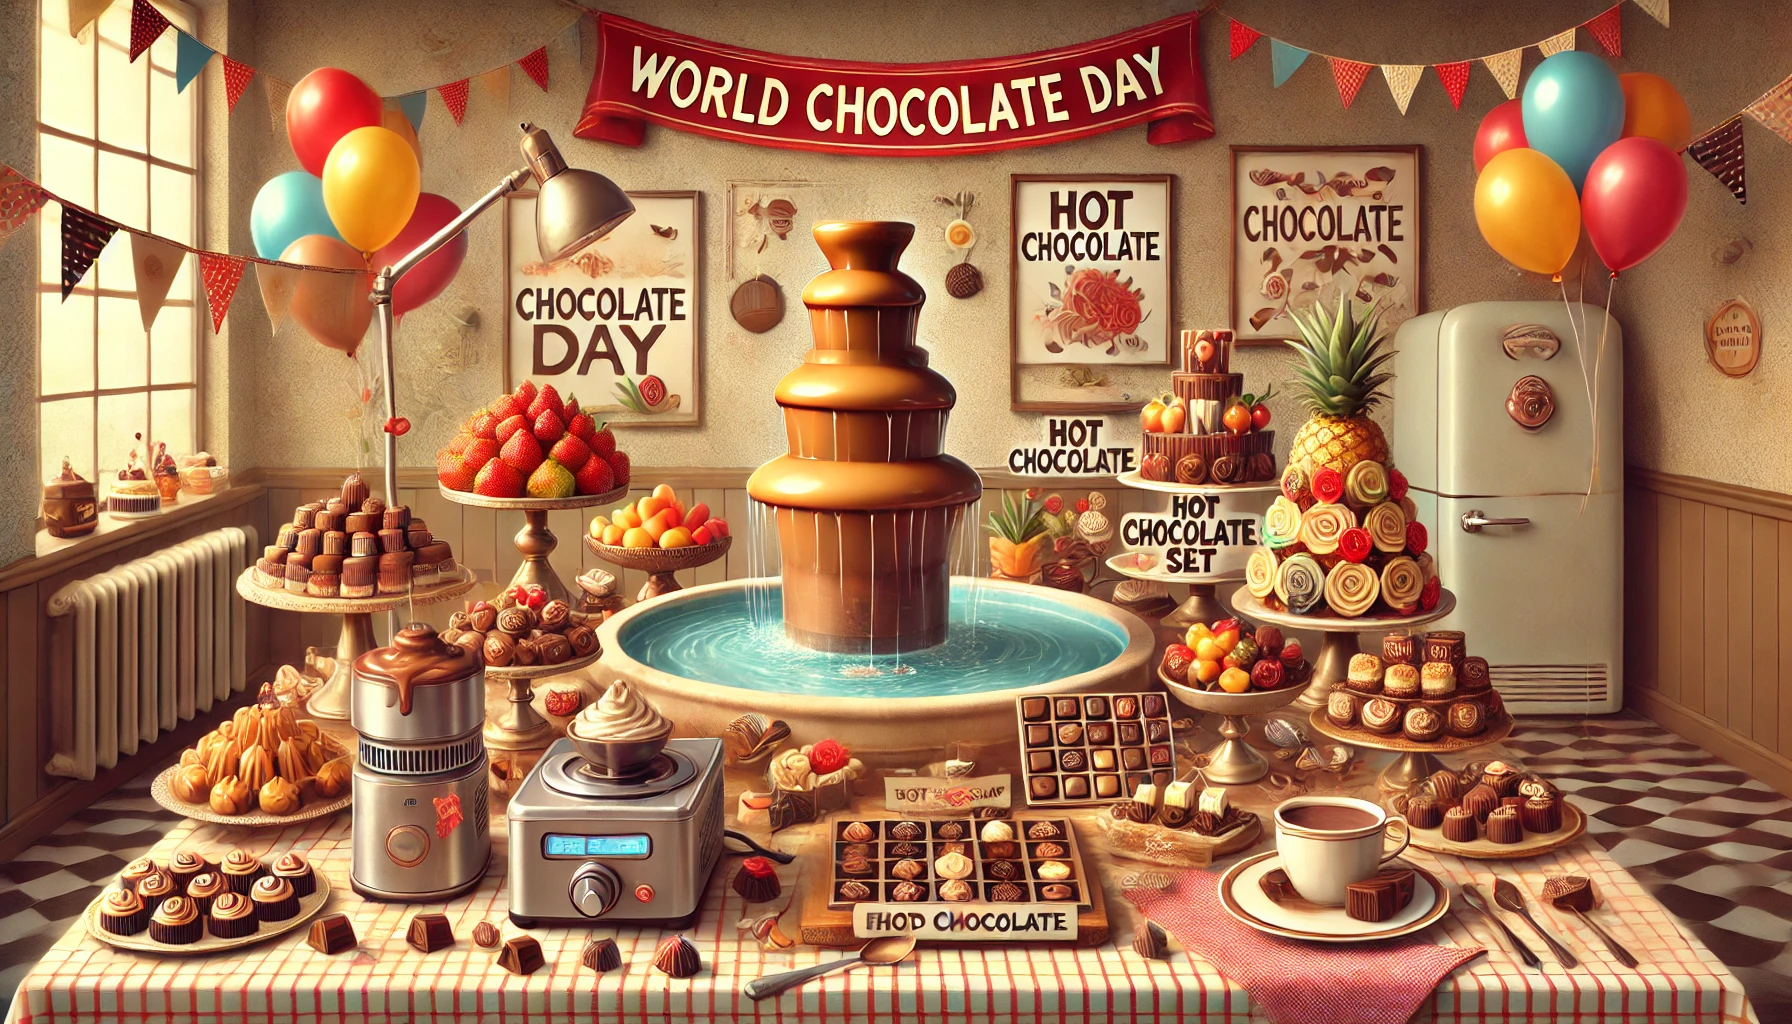 Immagine  7 Luglio, Giornata Mondiale del Cioccolato<br><i> Curiosità, Idee di Noleggio e Feste a Tema</i>